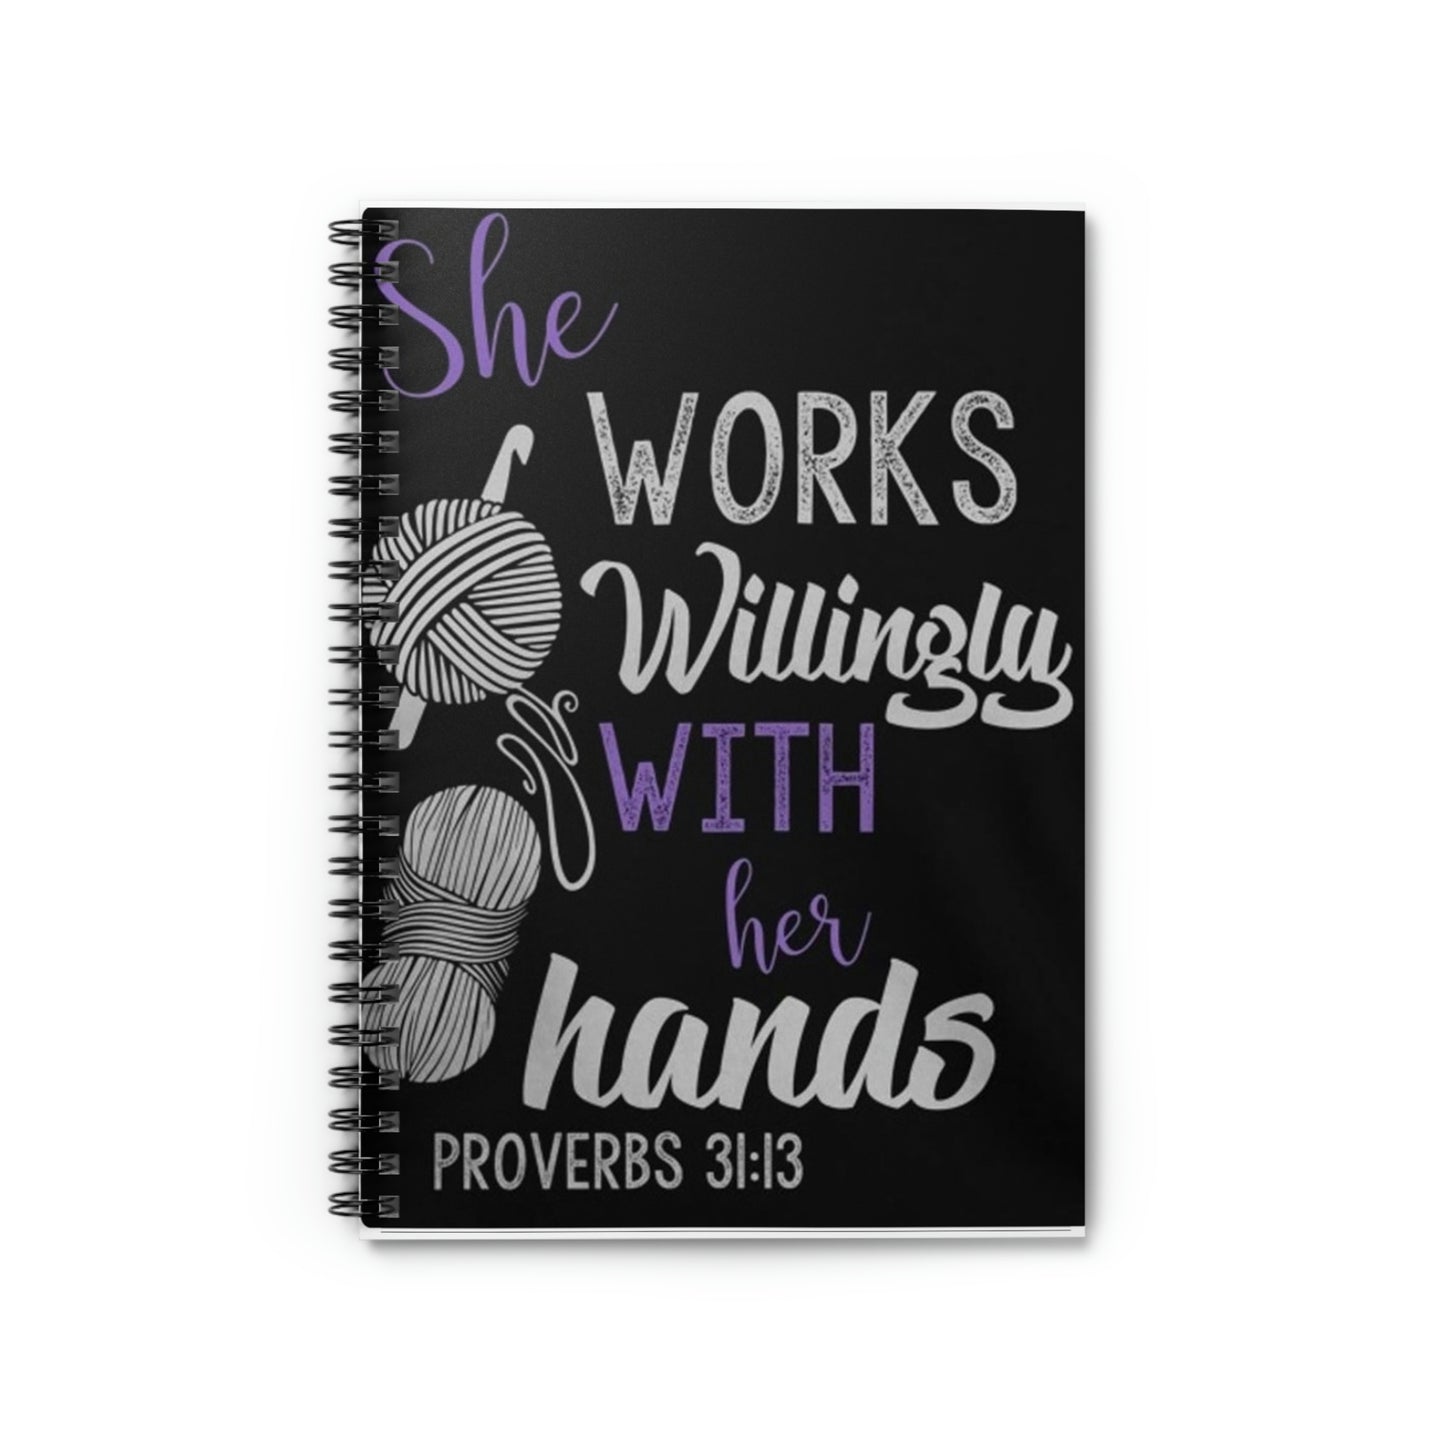 Proverbs Crochet Woman-Spiral Notebook - Ruled Line